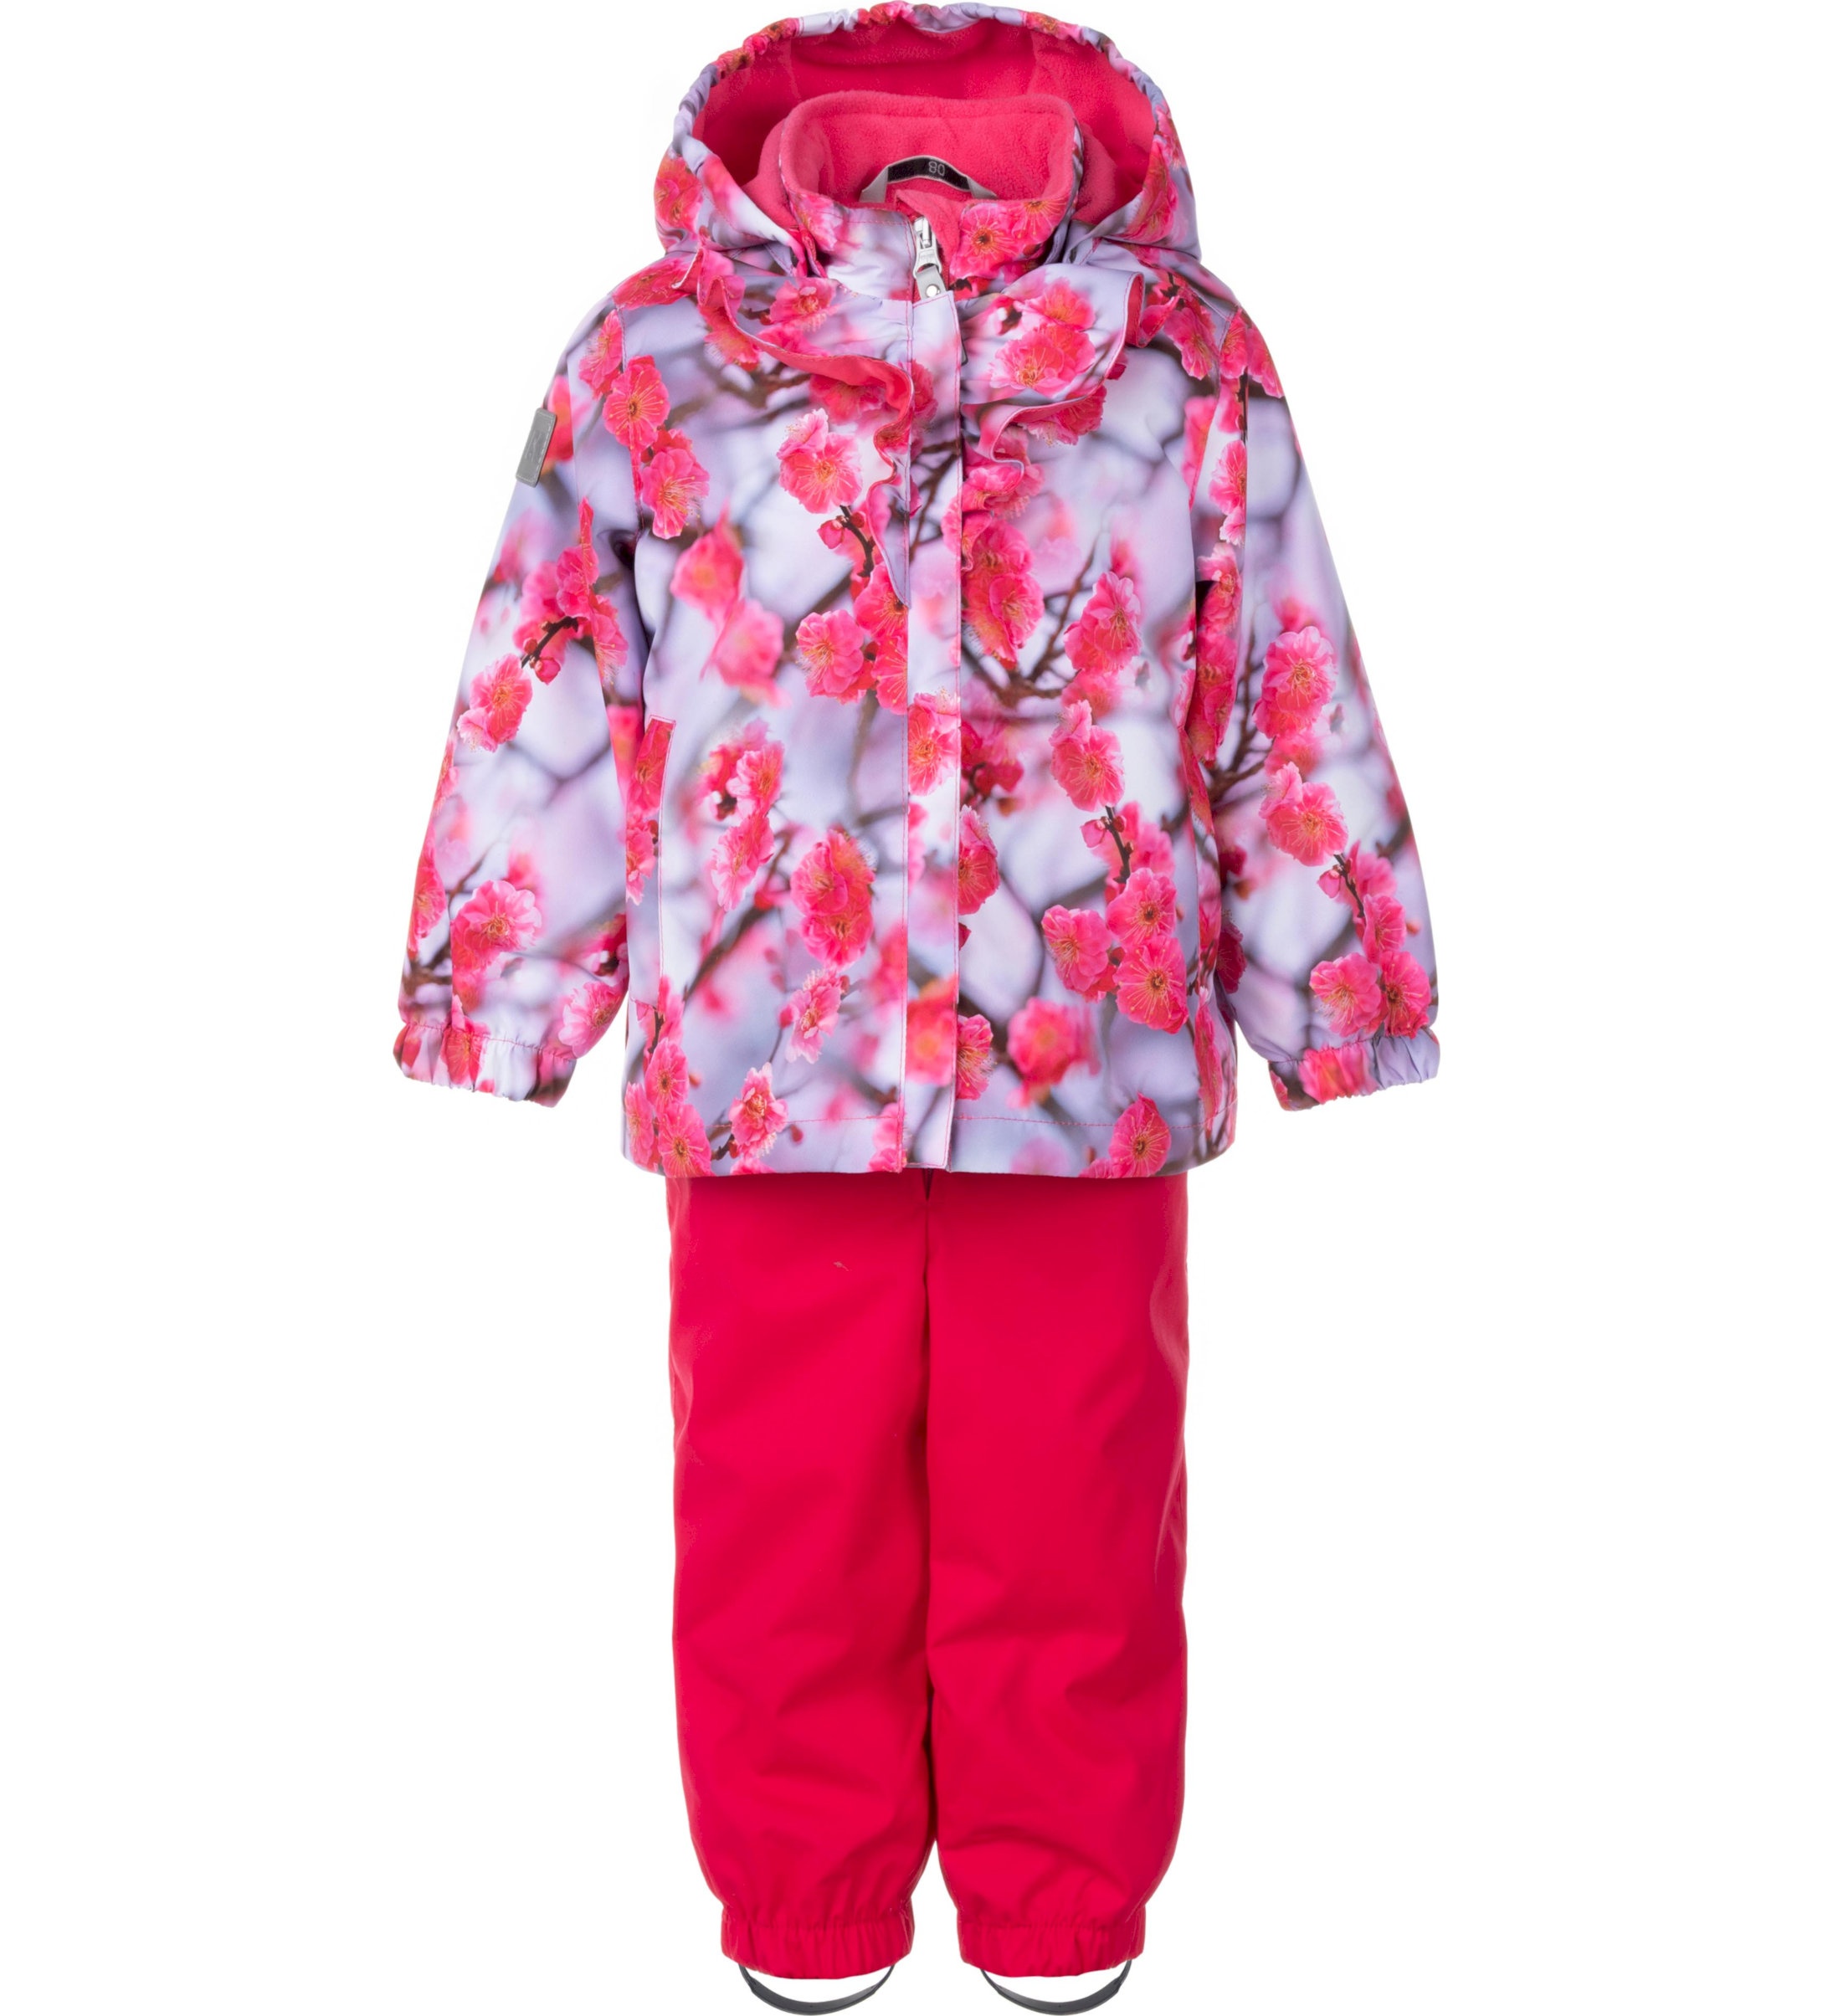 Комплект верхней одежды детский KERRY K24011, розовый, 86